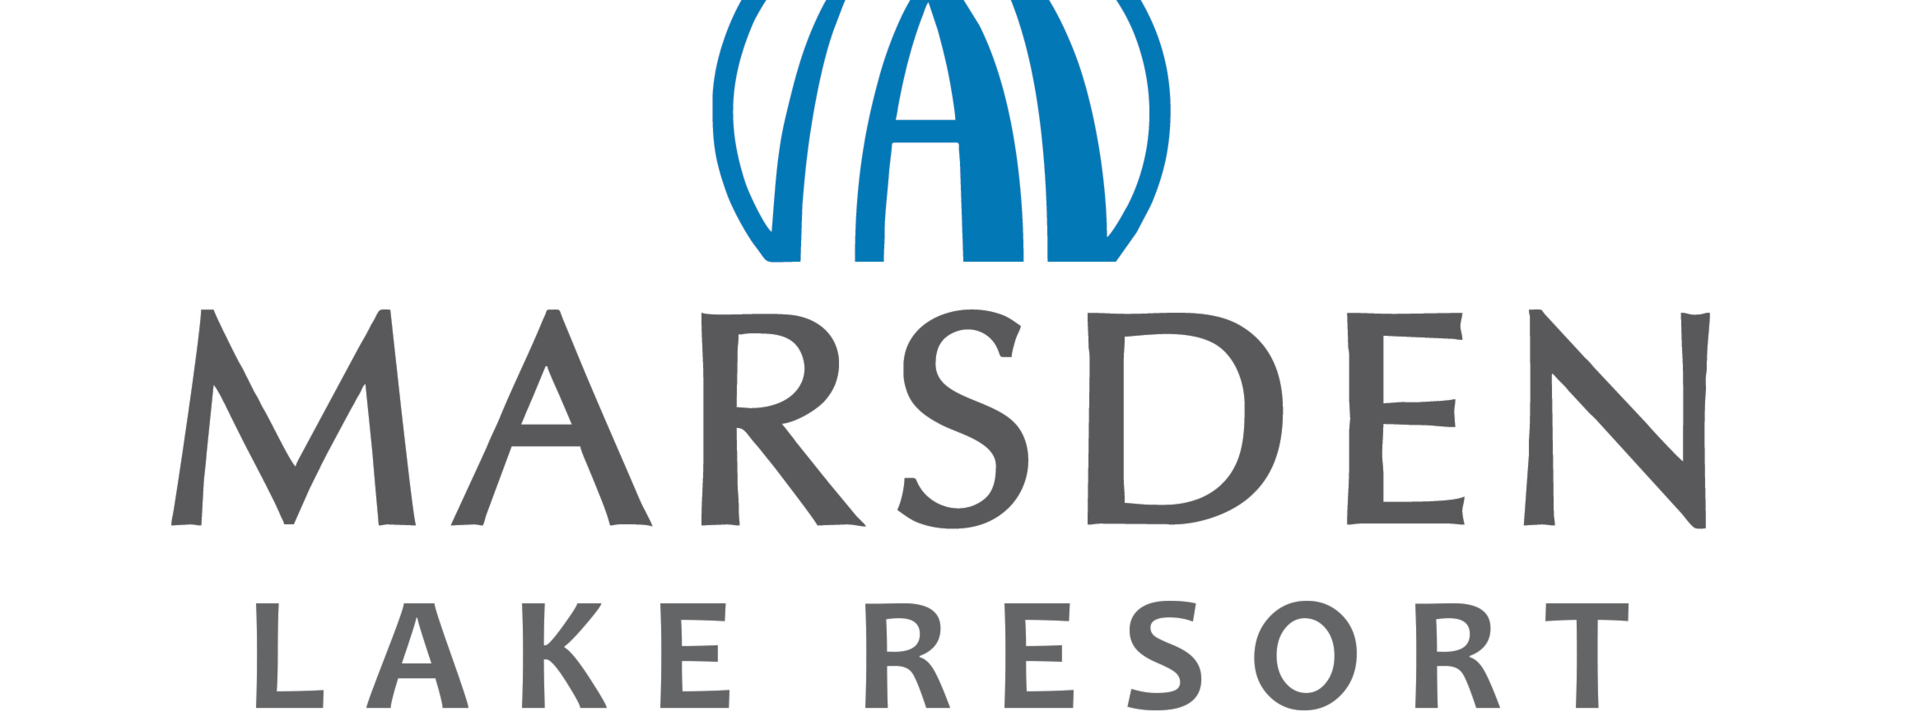 Marsden Lake Resort Logo - Cropped.png